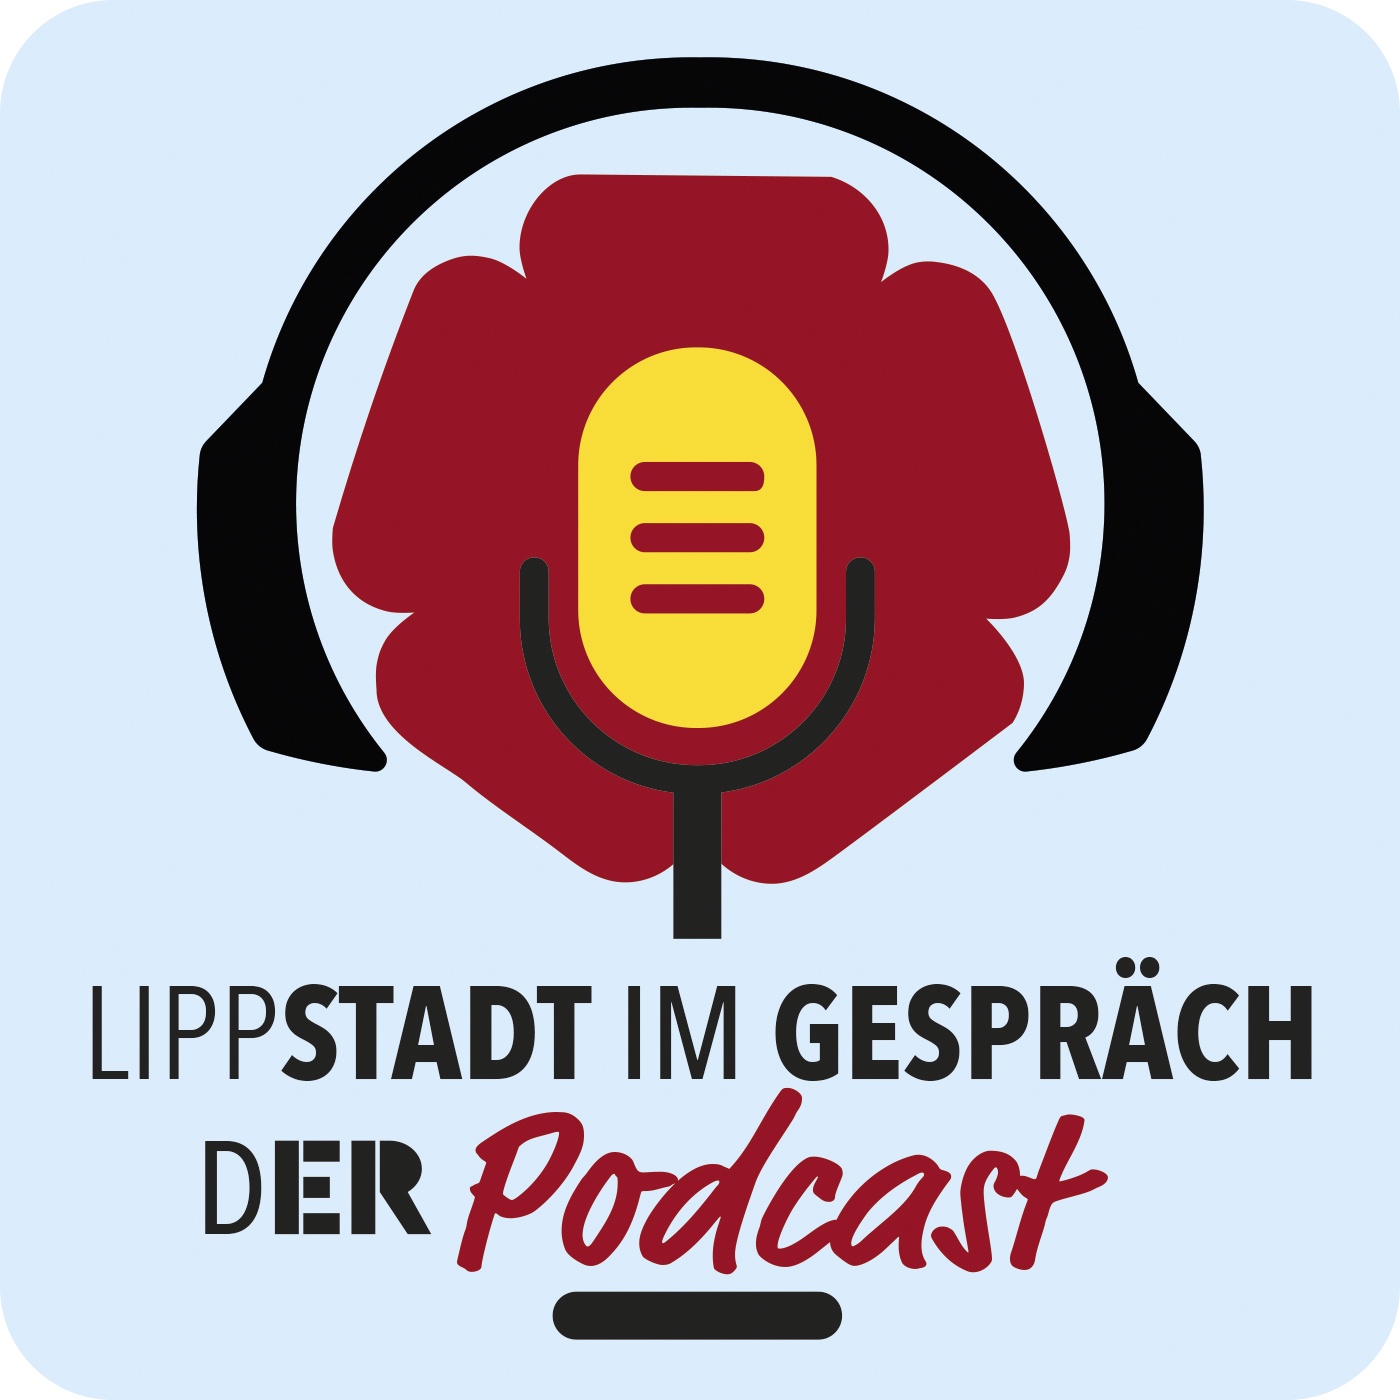 LippSTADT im GESPRÄCH - Der Podcast